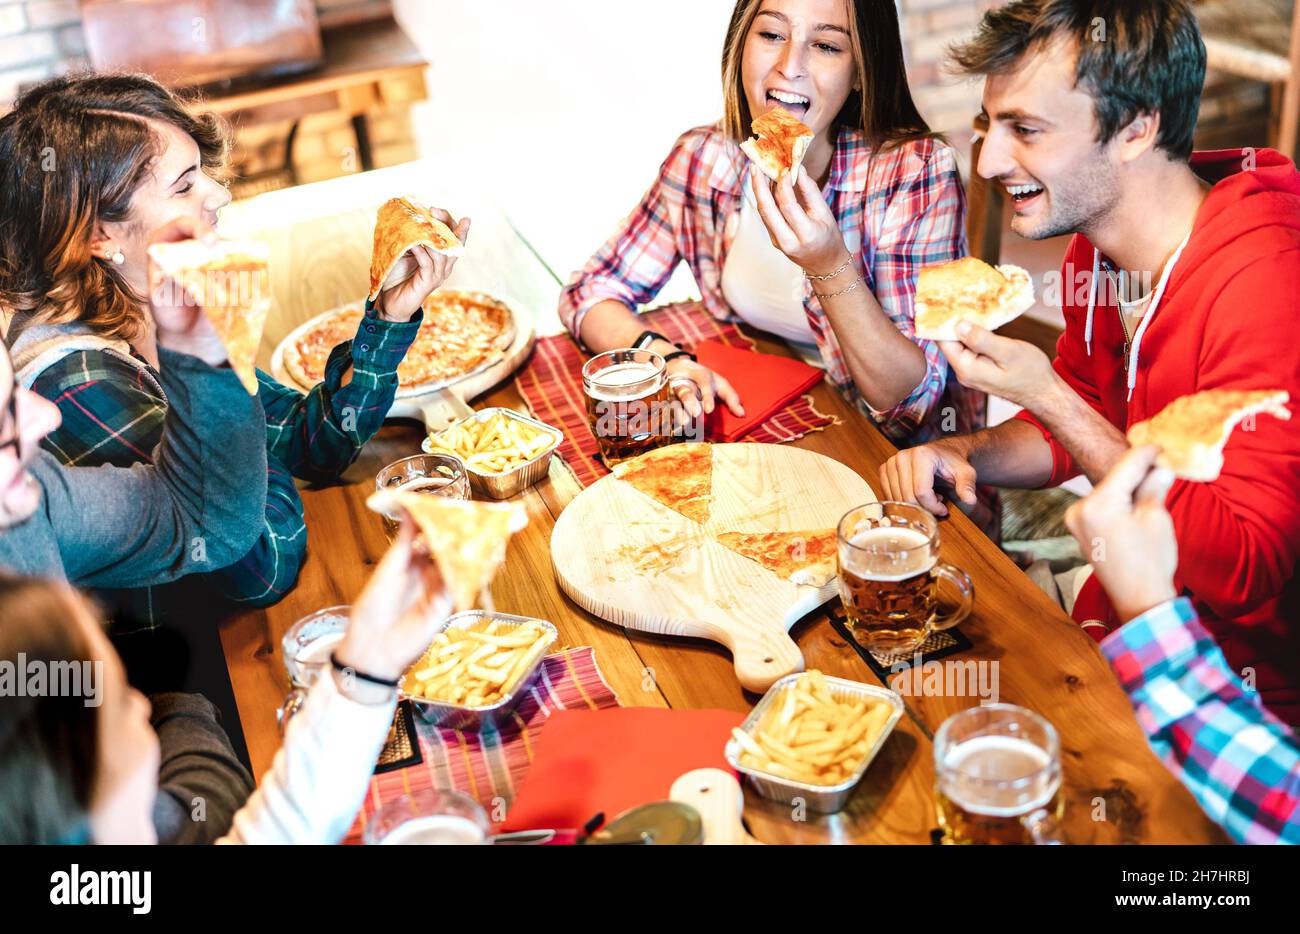 Junge Menschen auf Essen zum Mitnehmen Pizza zu Hause auf Familientreffen - Freundschaft Lebensstil Konzept mit glücklichen Freunden genießen Zeit zusammen Spaß haben Stockfoto